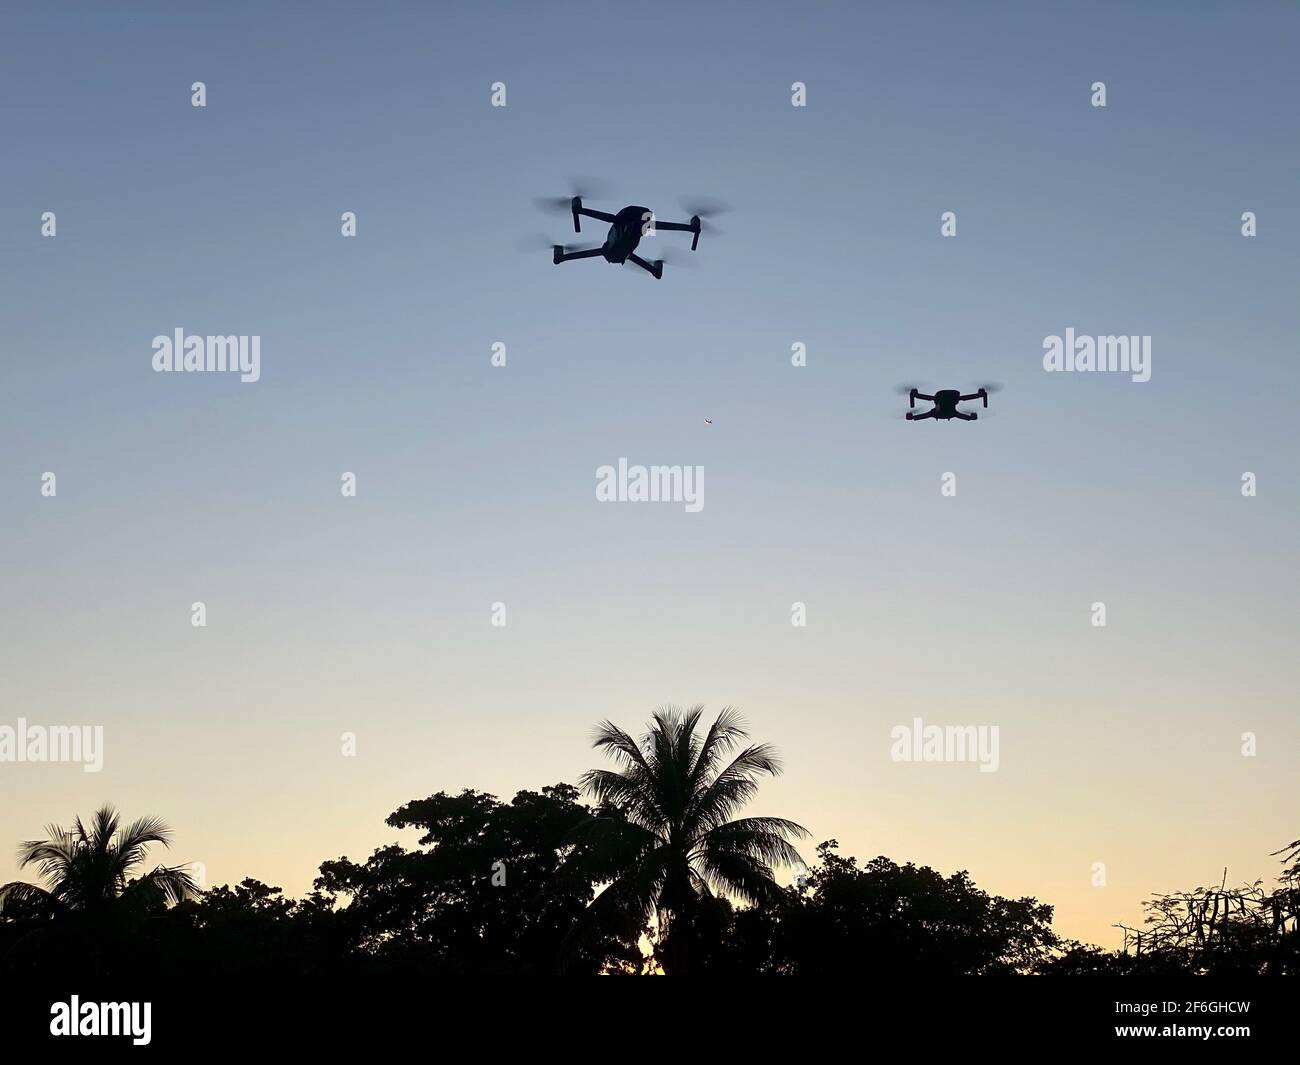 Zwei Drohnen am Himmel während eines Sonnenuntergangs mit Palmen Bäume Stockfoto